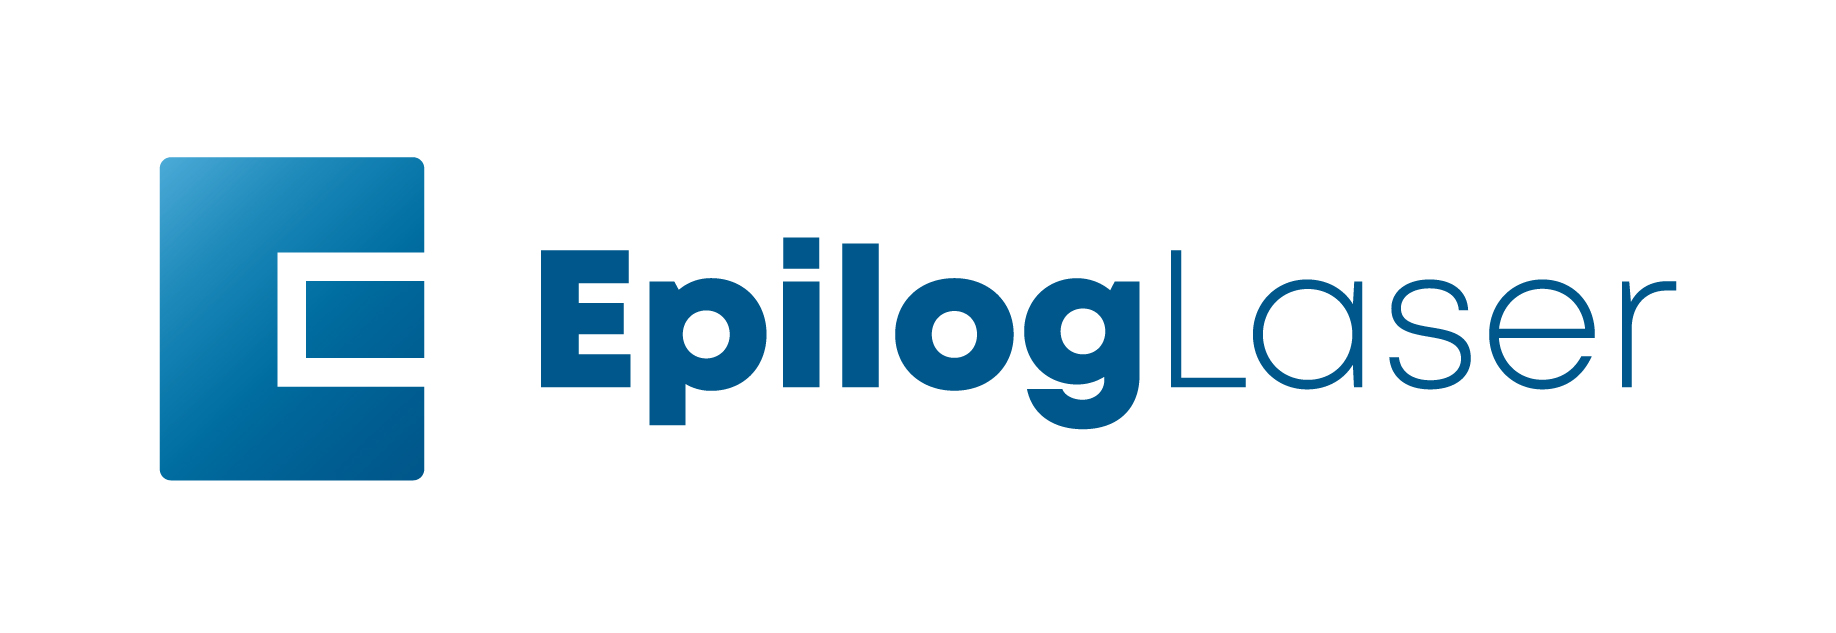 Epilog Laser Logo